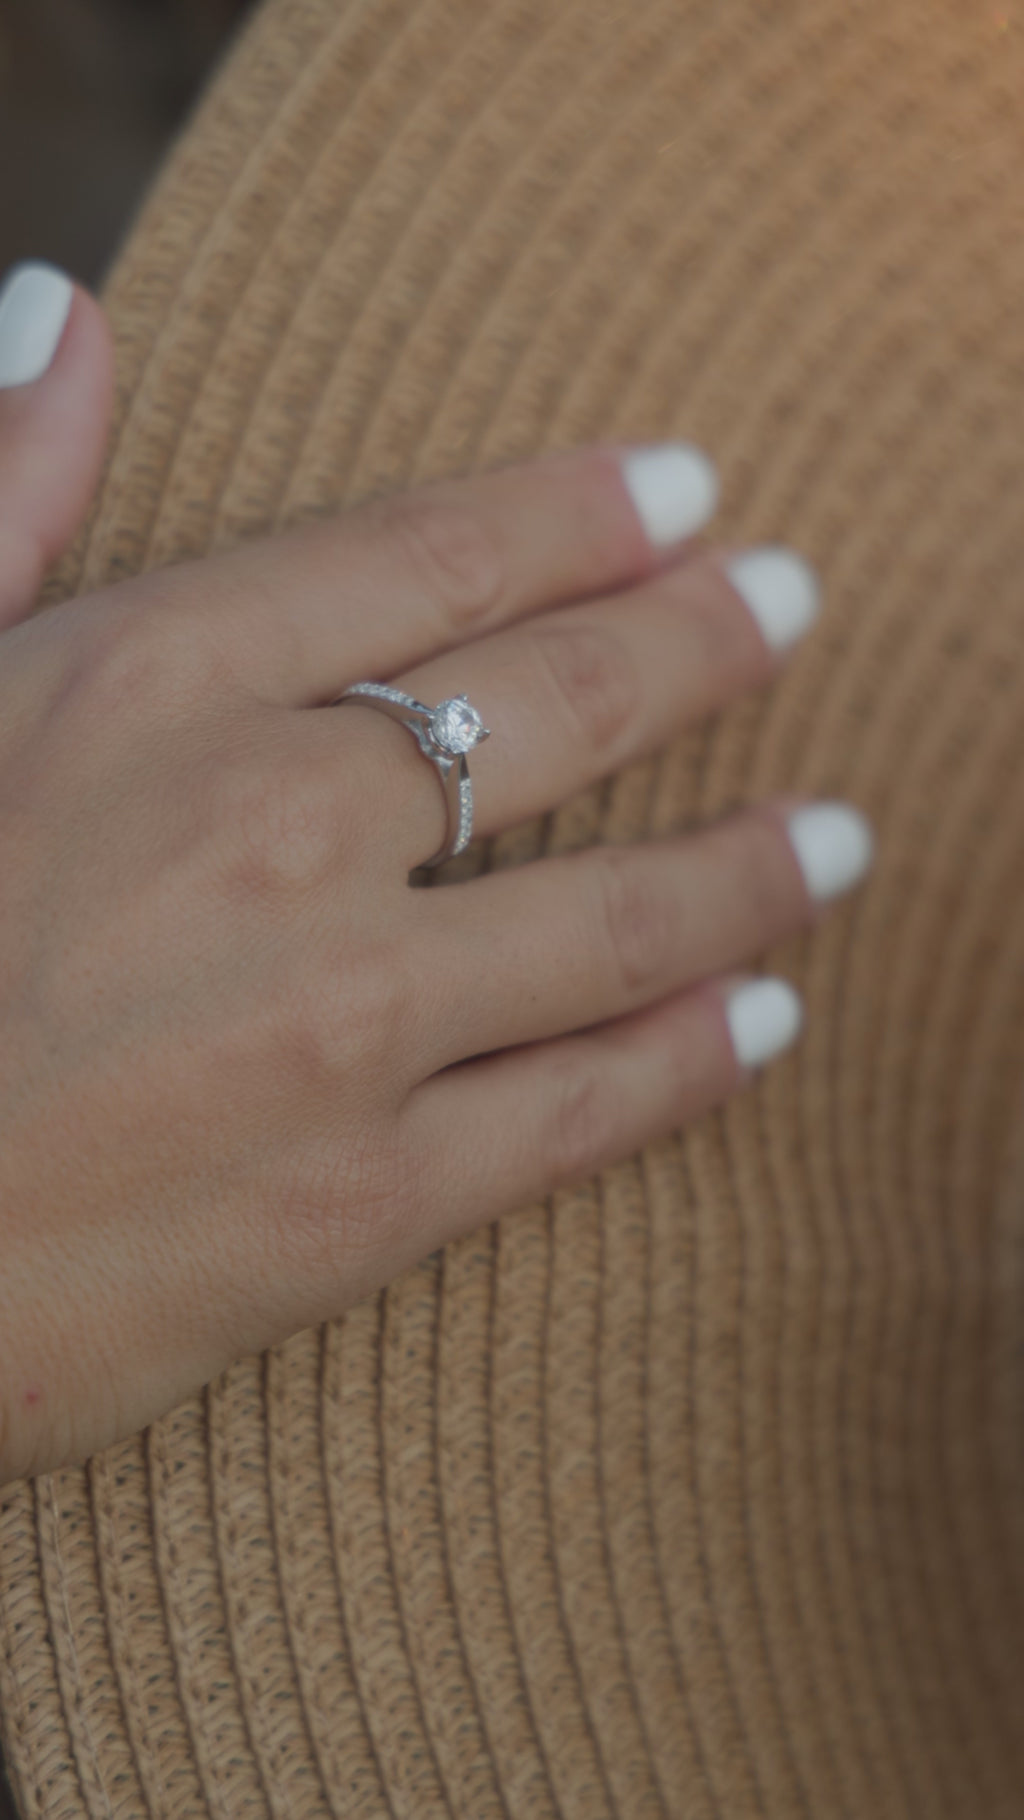 Μονόπετρο δαχτυλίδι με διαμάντι κατασκευασμένο από λευκόχρυσο, με πλαϊνές πέτρες από μικρότερα διαμάντια, φορεμένο σε γυναικείο χέρι.